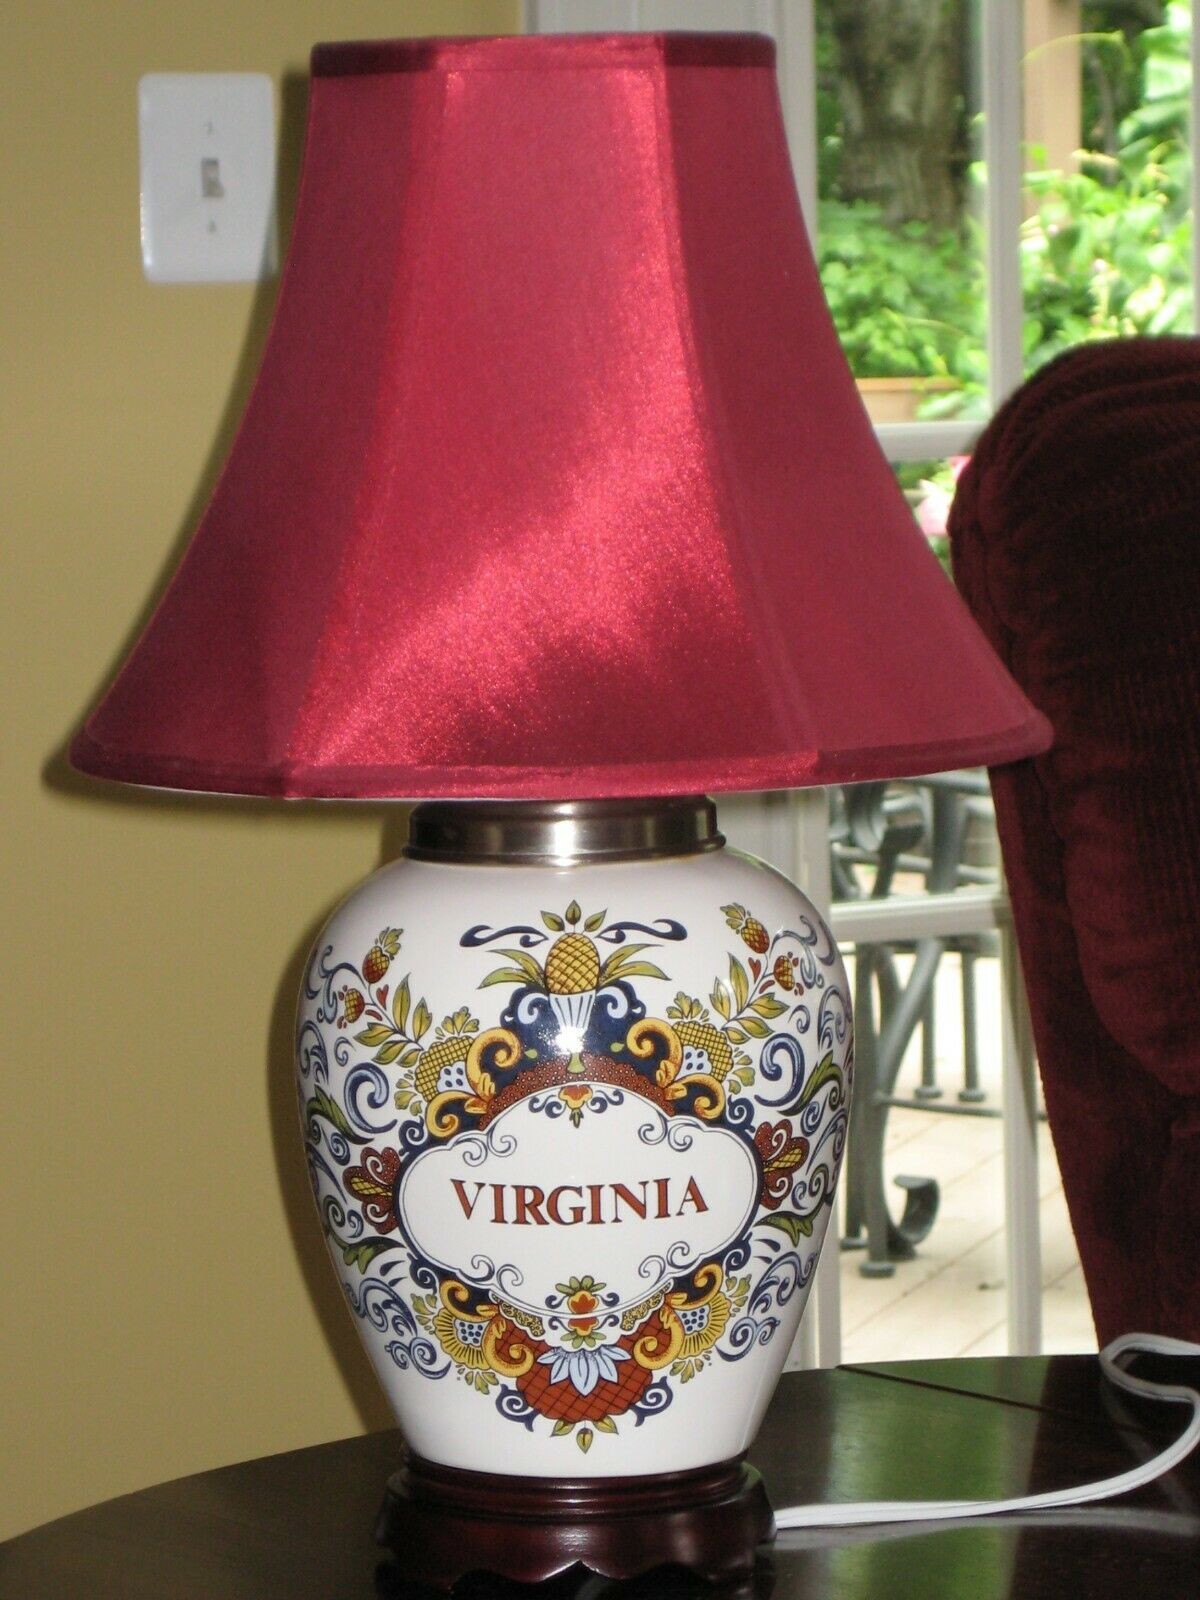 Delft Apothecary Or Tobacco Jar Lamp 20" Olde Virginea Jar Company "virginia"